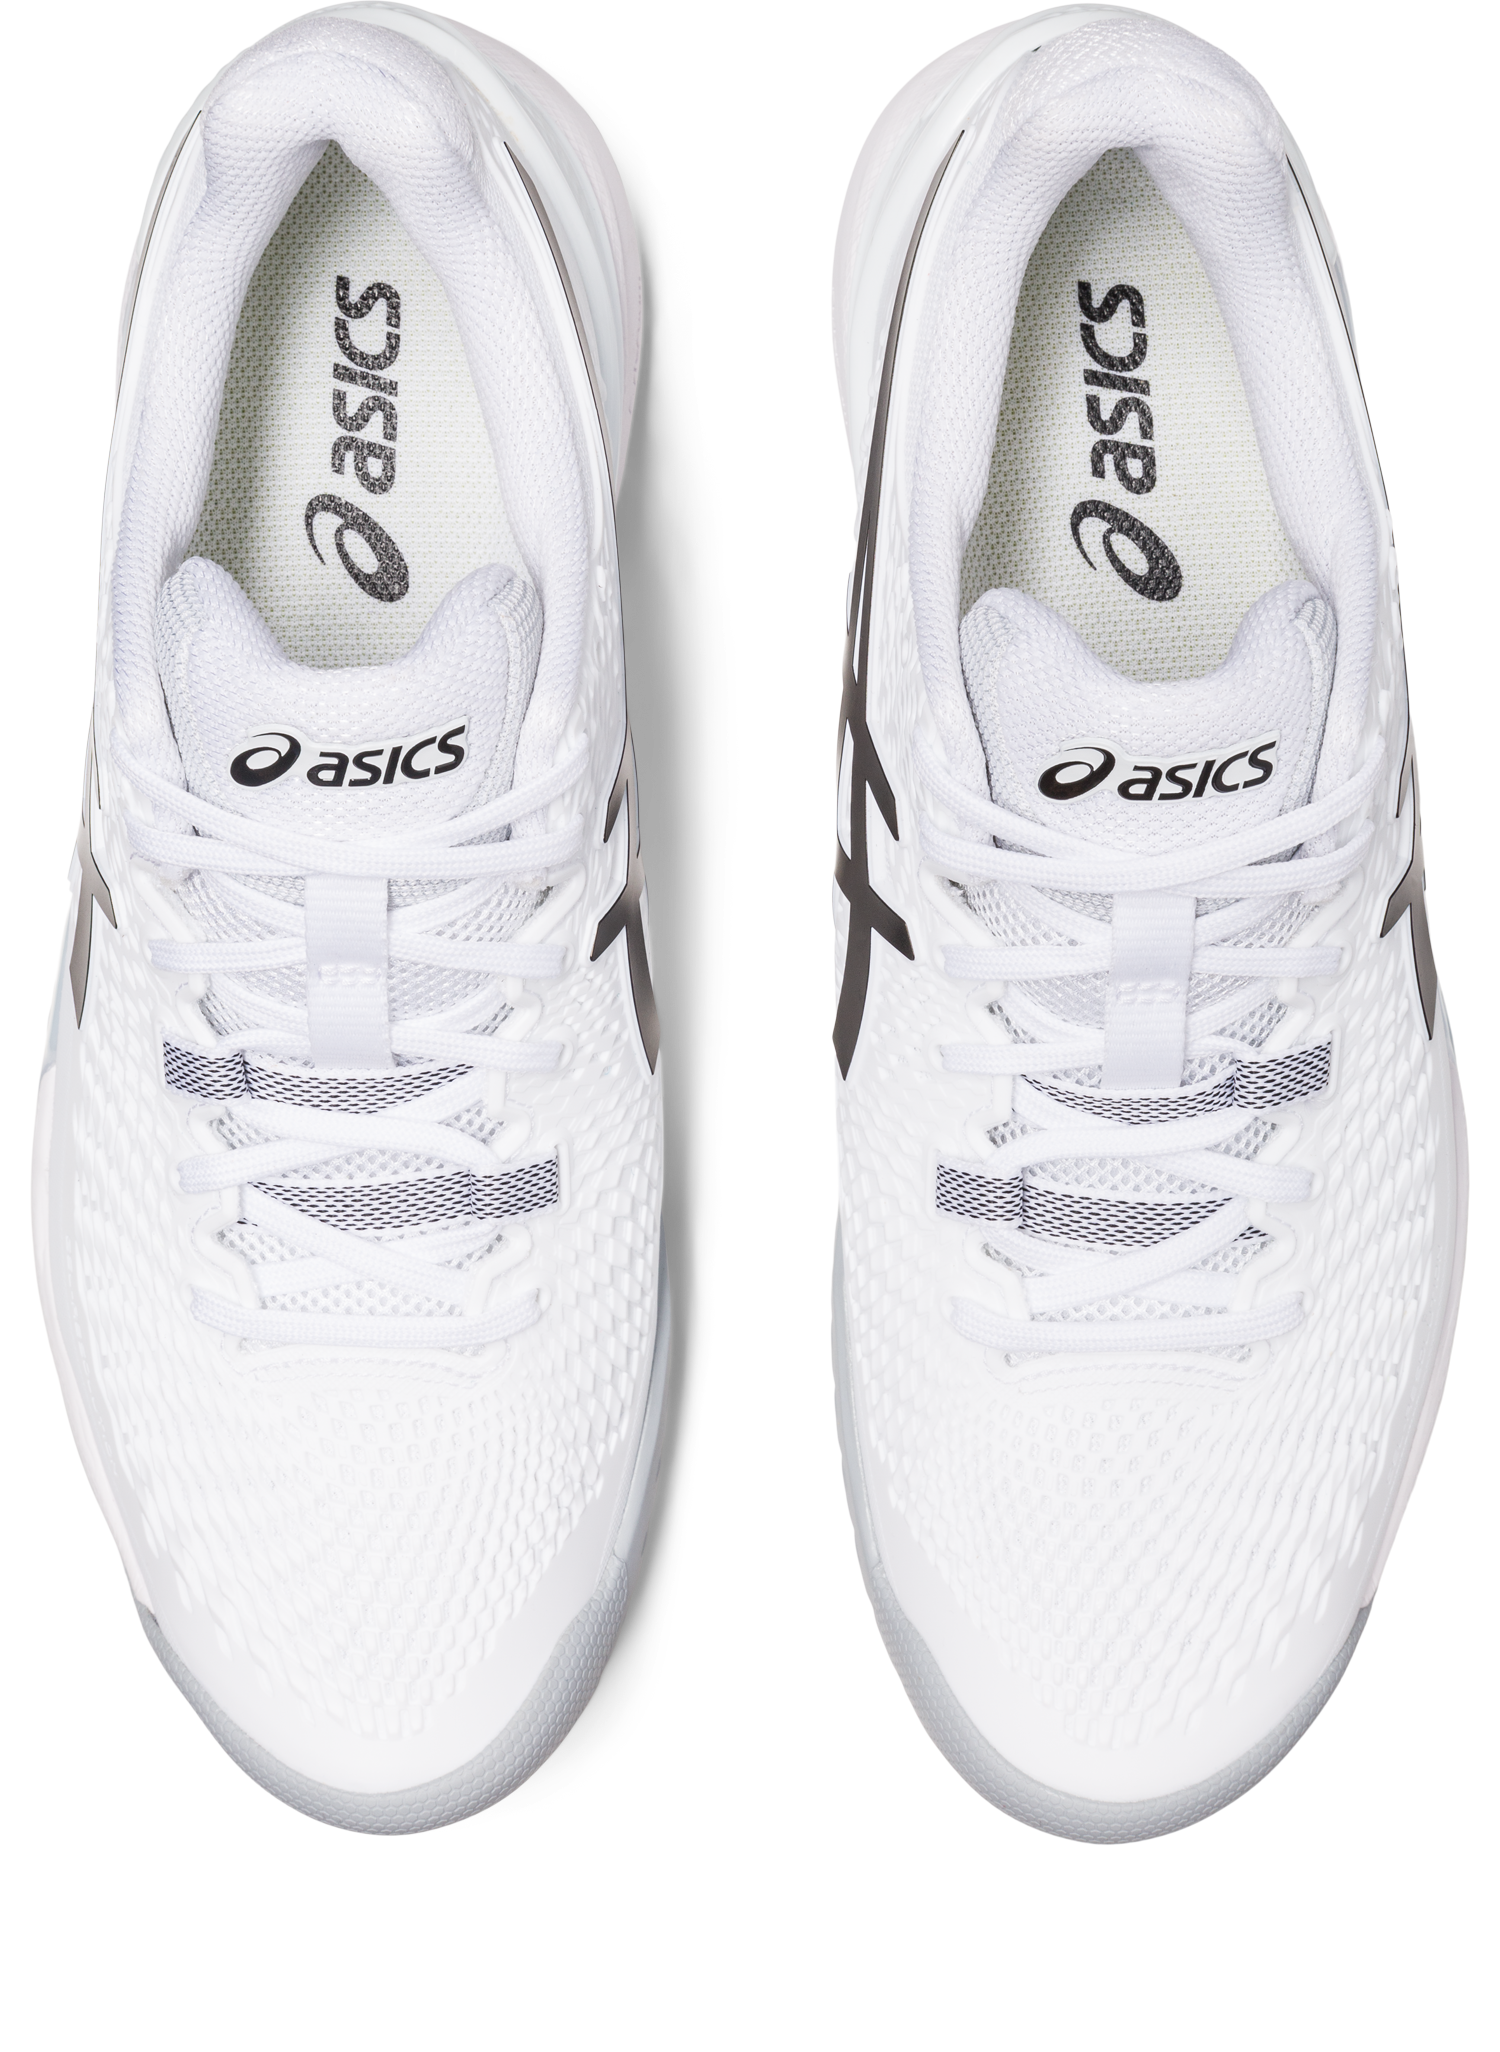 Asics Men's Gel-Resolution 9 Tennis Shoes In White/Black